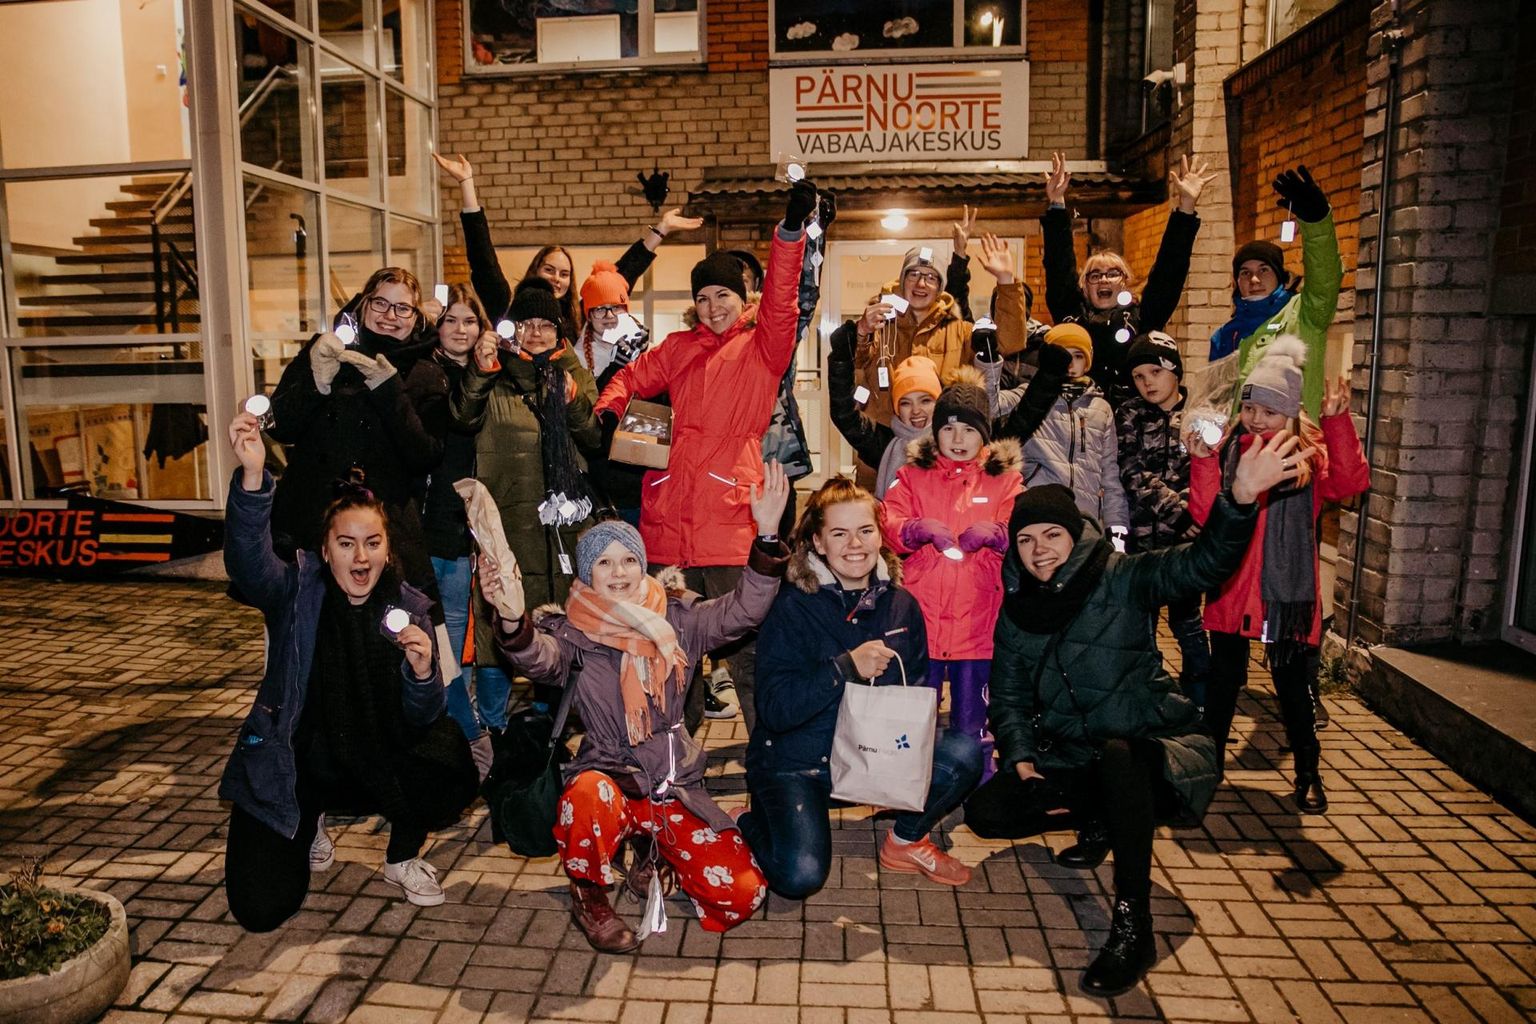 Pärnu noorte vabaajakeskuse ees kogunenud noored lõid kaasa üleriigilises helkurkõnni kampaanias.